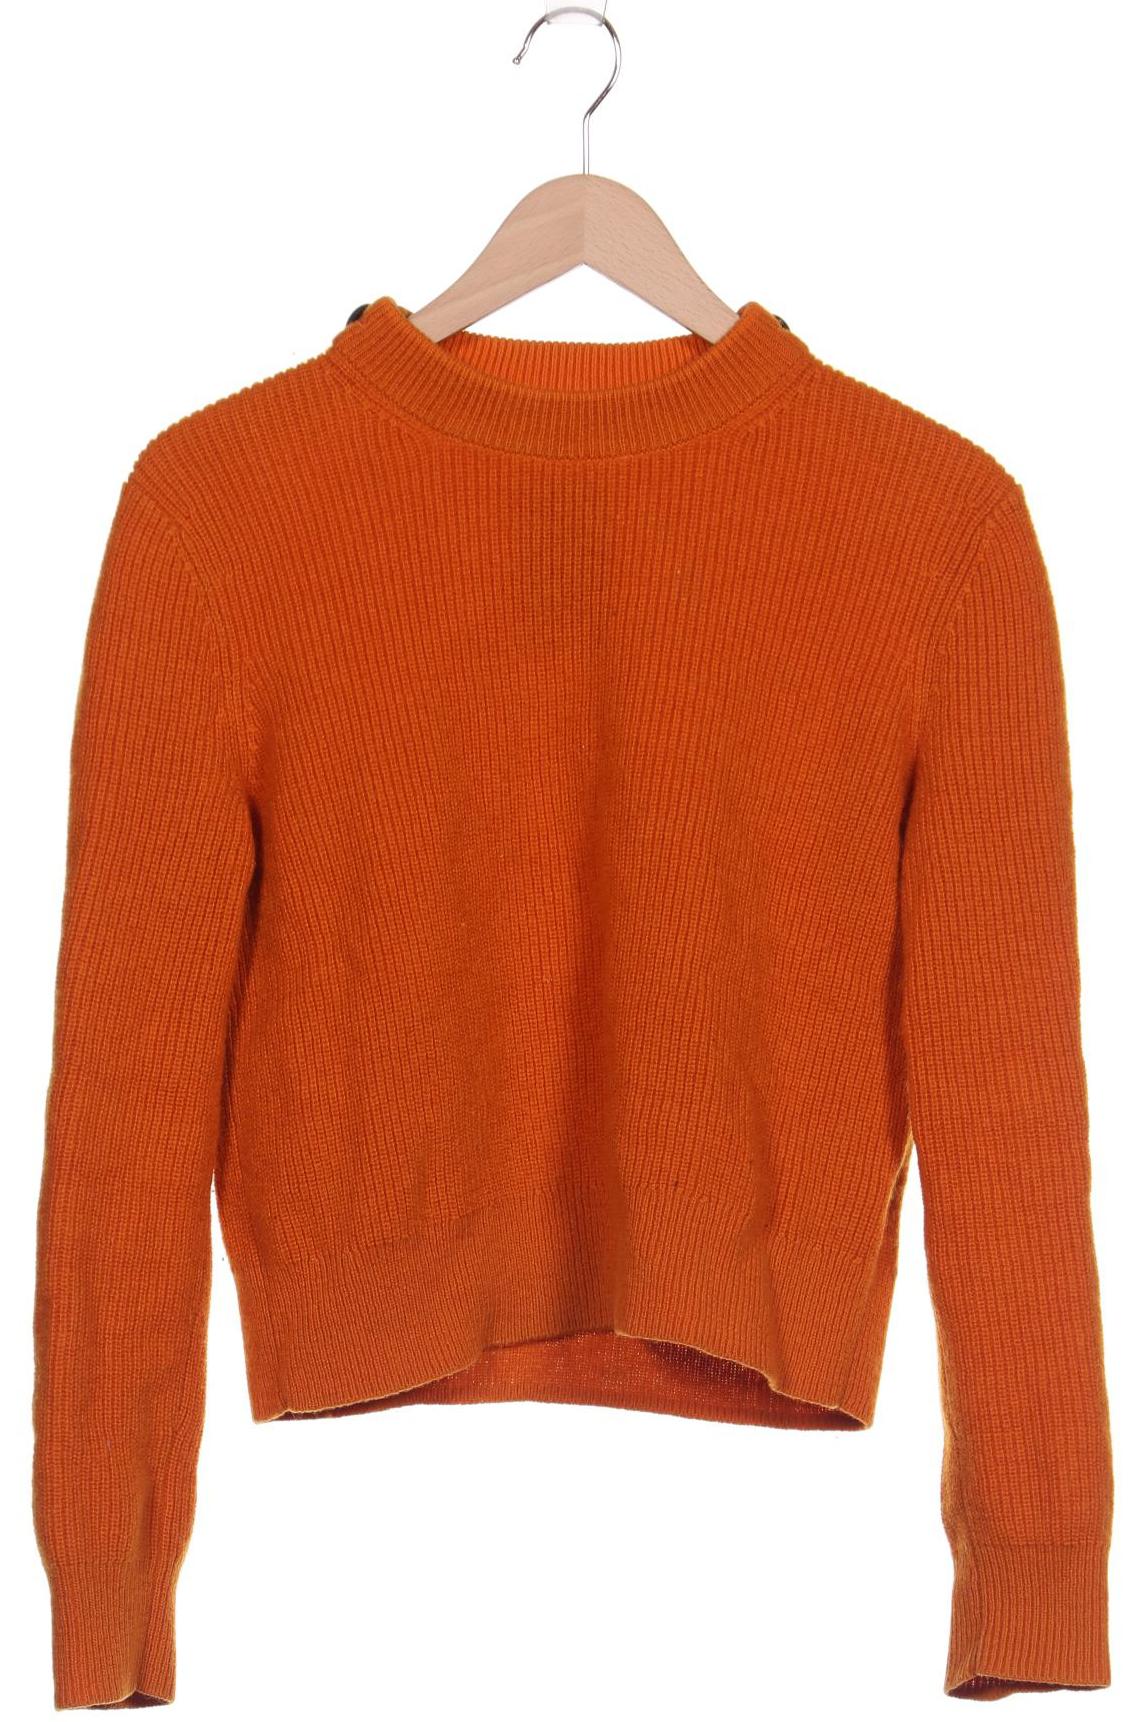 Arket Damen Pullover, orange, Gr. 36 von Arket